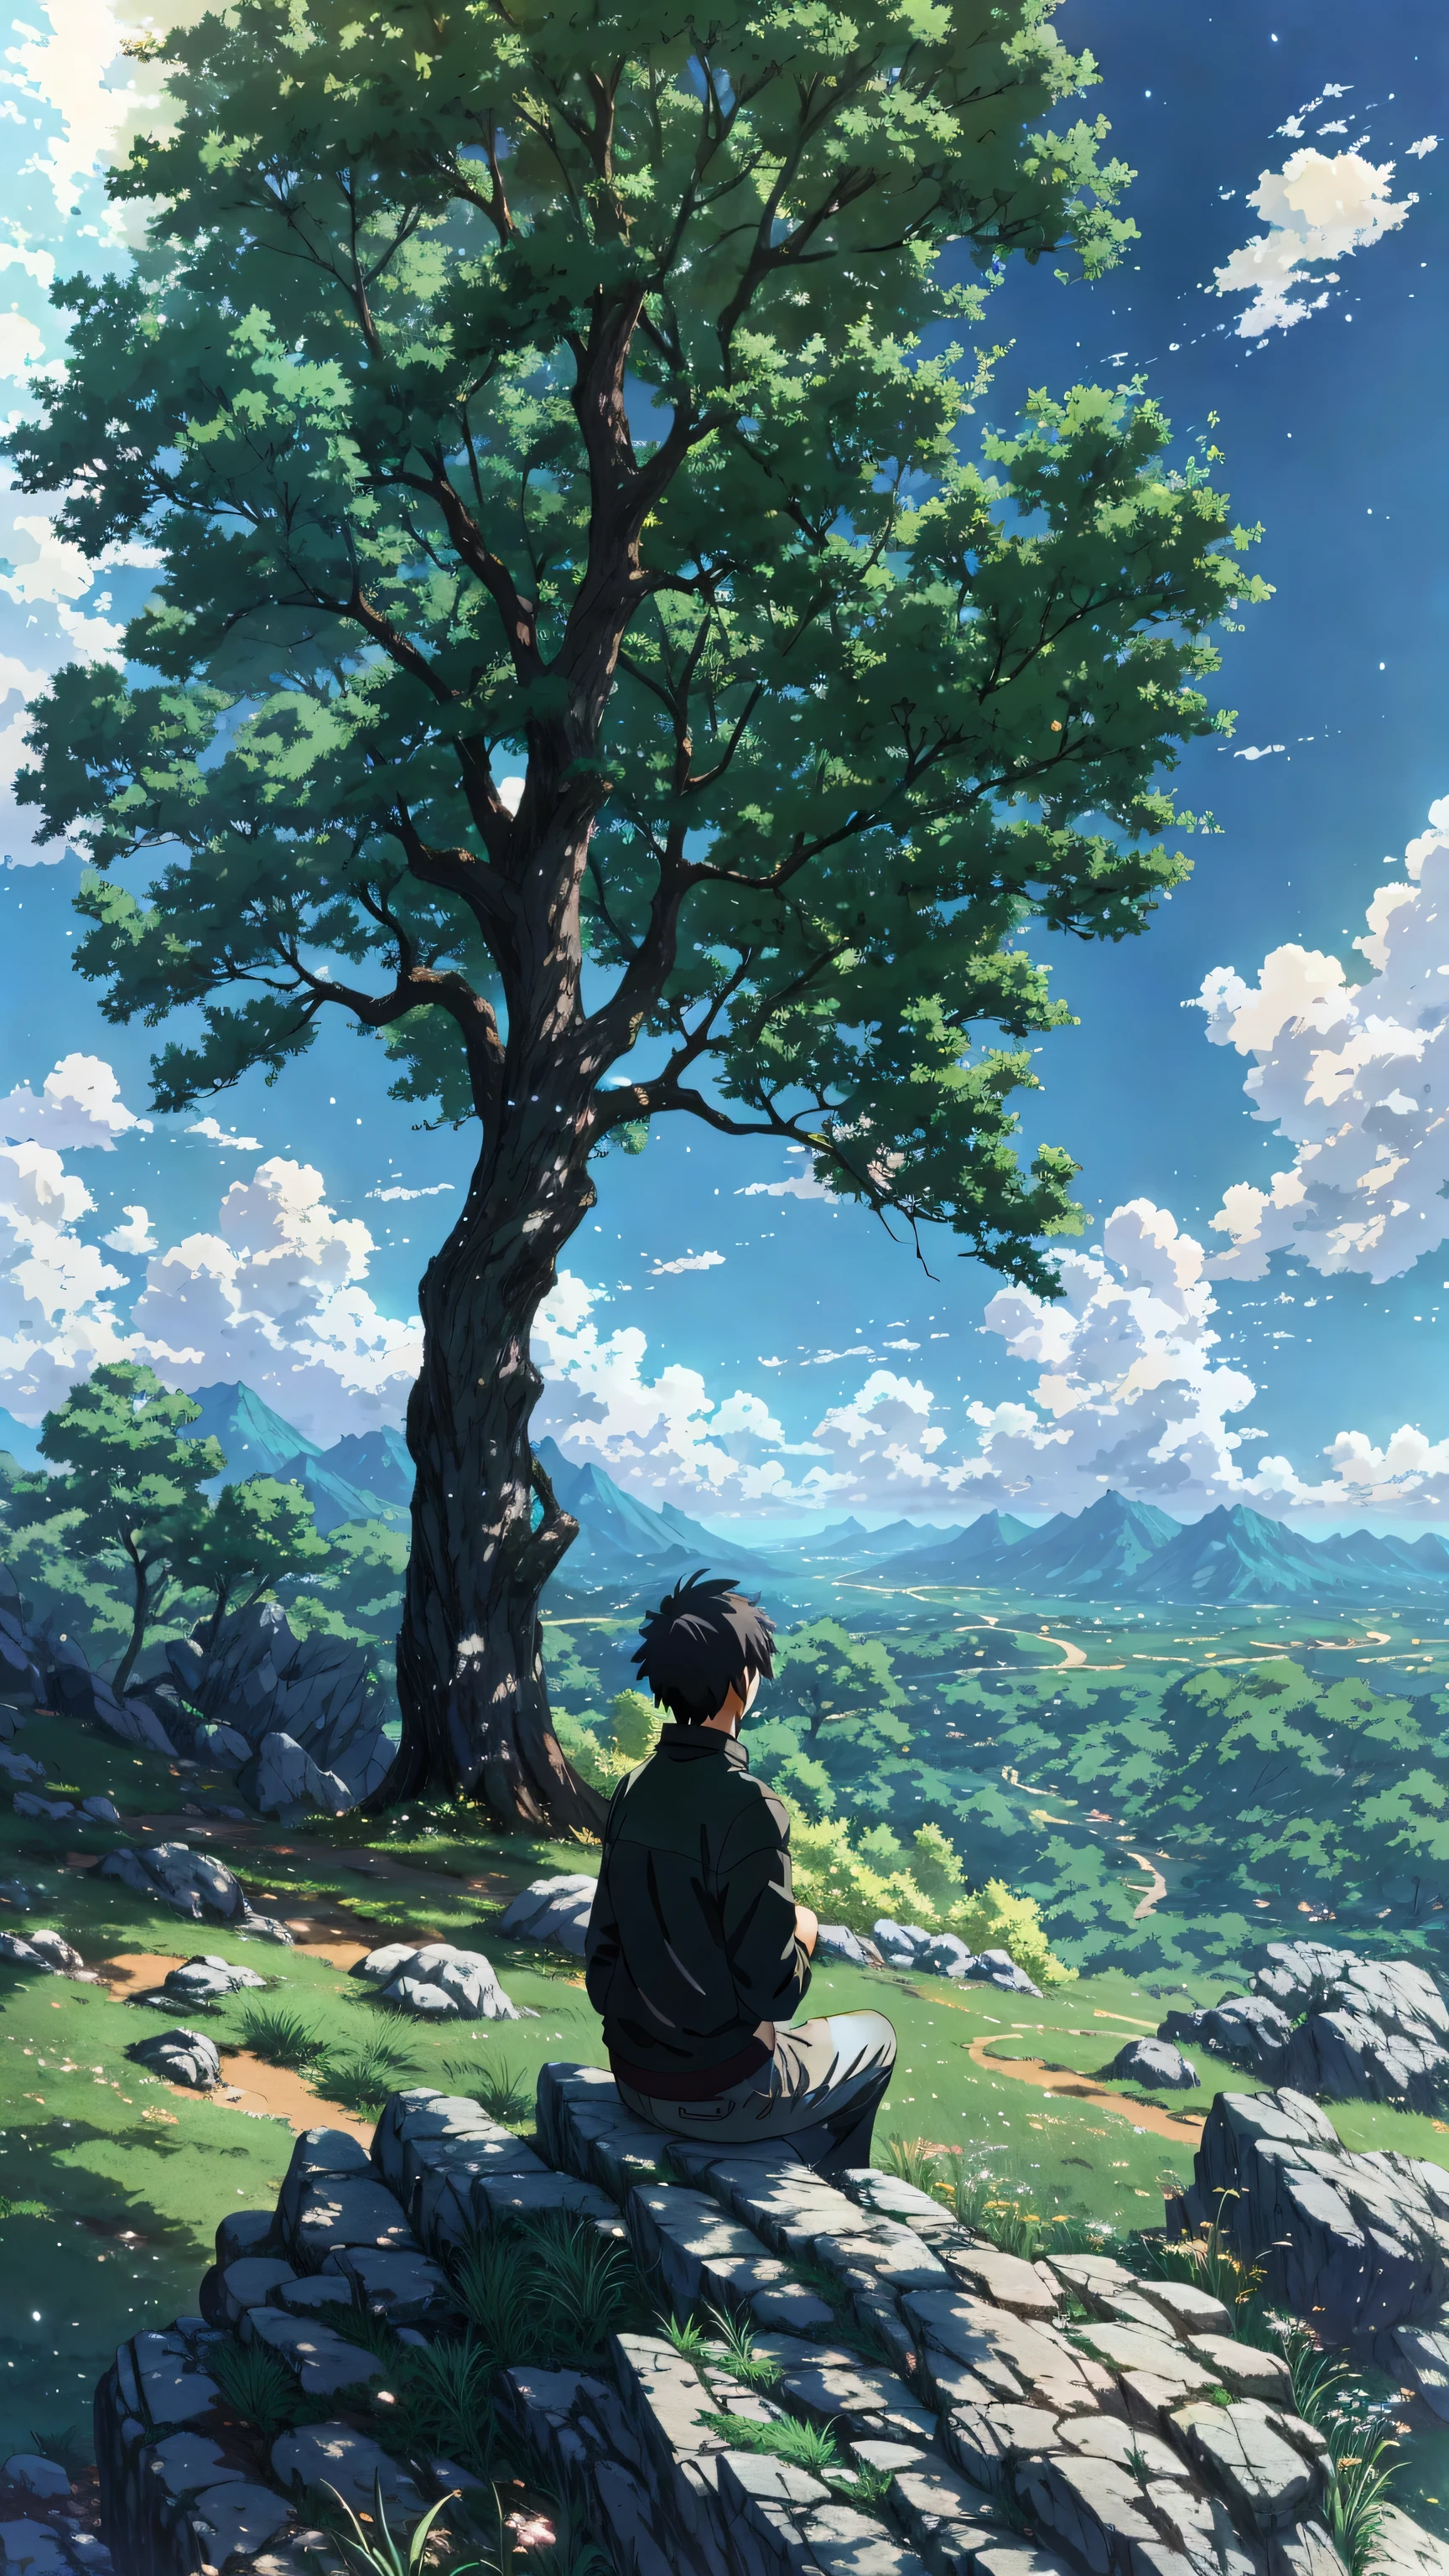 อะนิเมะ - ฉากสไตล์ผู้ชายคนหนึ่งนั่งอยู่บนก้อนหินหน้าต้นไม้, อะนิเมะฉากสันติภาพที่สวยงาม, อะนิเมะธรรมชาติ, มาโกโตะ ชินไค. —h 2160, ภูมิทัศน์อะนิเมะ, มาโกโตะ ชินไค cyril rolando, ฉากอนิเมะที่สวยงาม, อะนิเมะเขียวชอุ่ม john 8k woods, มาโกโตะ ชินไค!, อนิเมะเด่นประจำวันนี้ยังคงอยู่, อะนิเมะธรรมชาติ wallpap